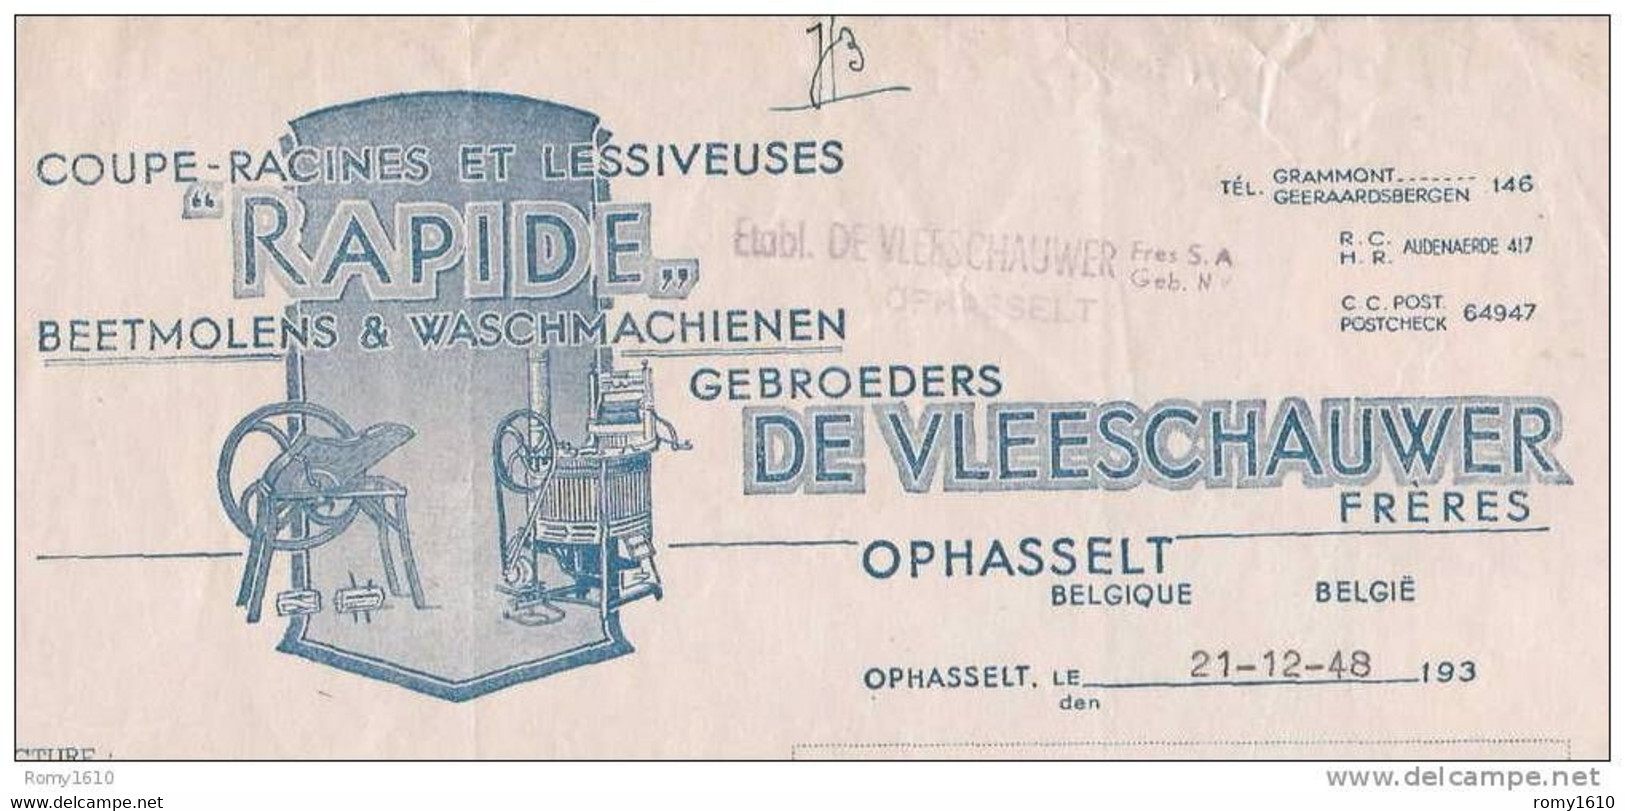 OPHASSELT - Superbe Facture Des Etablissements De Vleeschauwer - Coupe-Racines, Lessiveuses (1948) - Agriculture